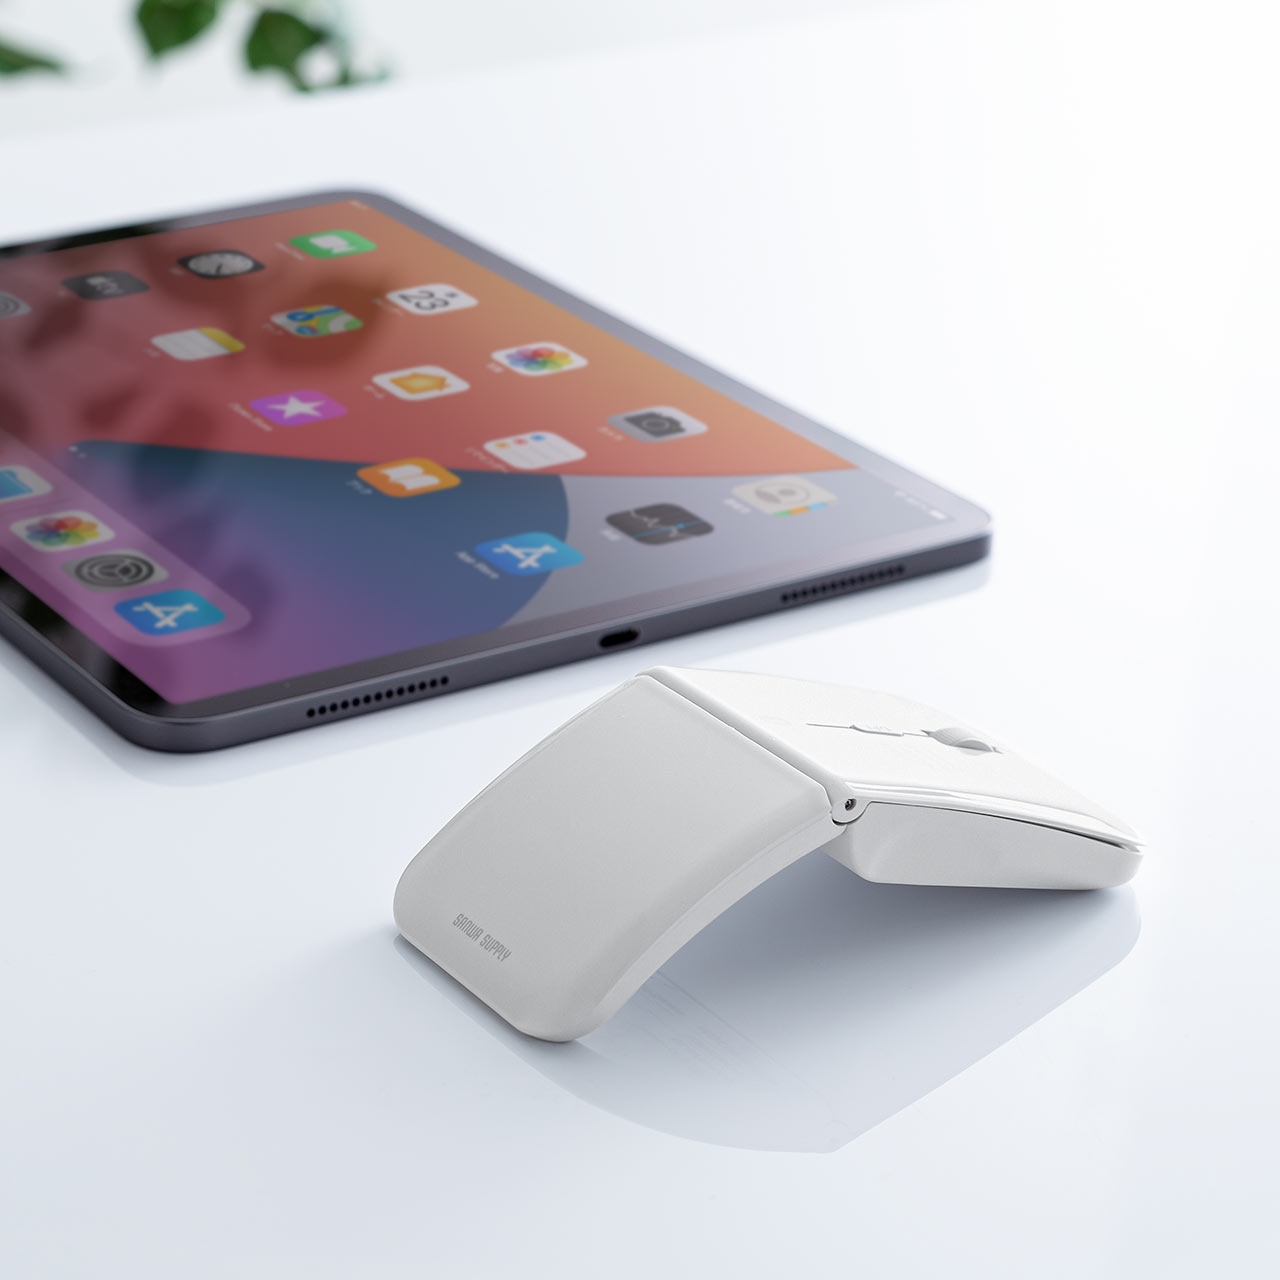 【ビジネス応援セール】薄型 Bluetoothマウス マルチペアリング対応 USB充電式 IRセンサー 折りたたみ式 3ボタン 400-MA120W